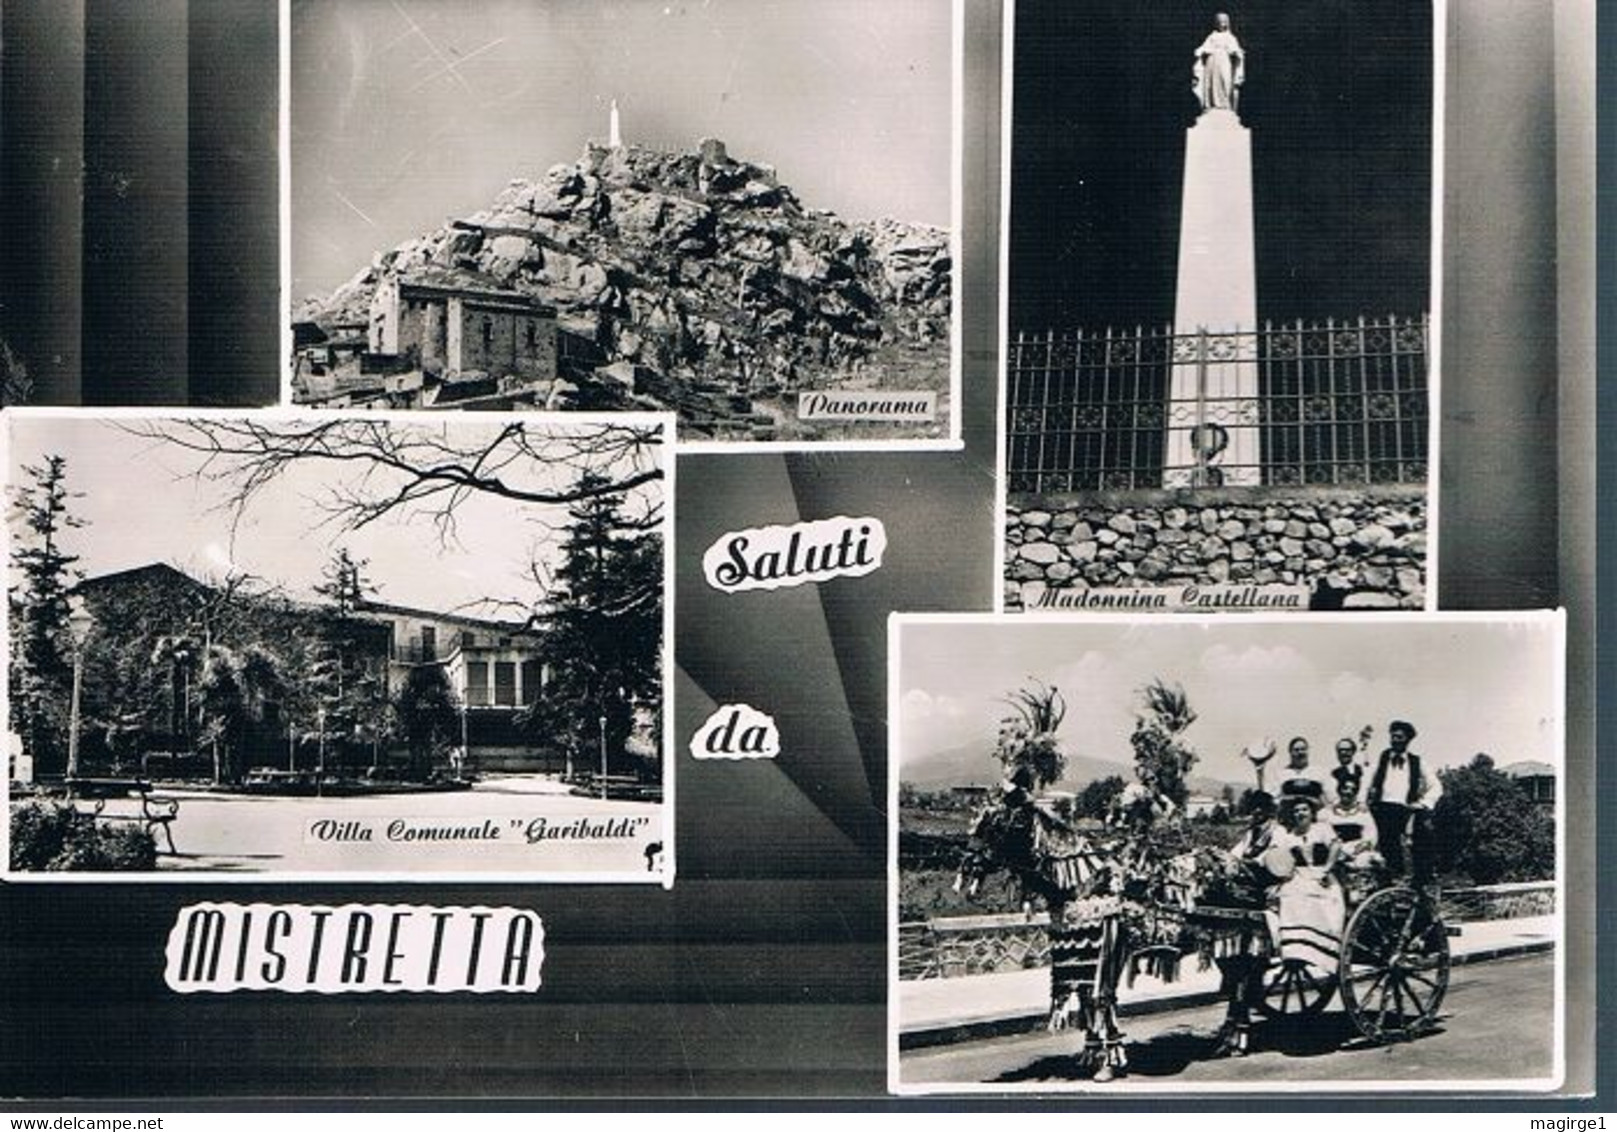 B4721 - Messina, Saluti Da Mistretta 4 Vedute, Viaggiata 1971, F. G. - Messina